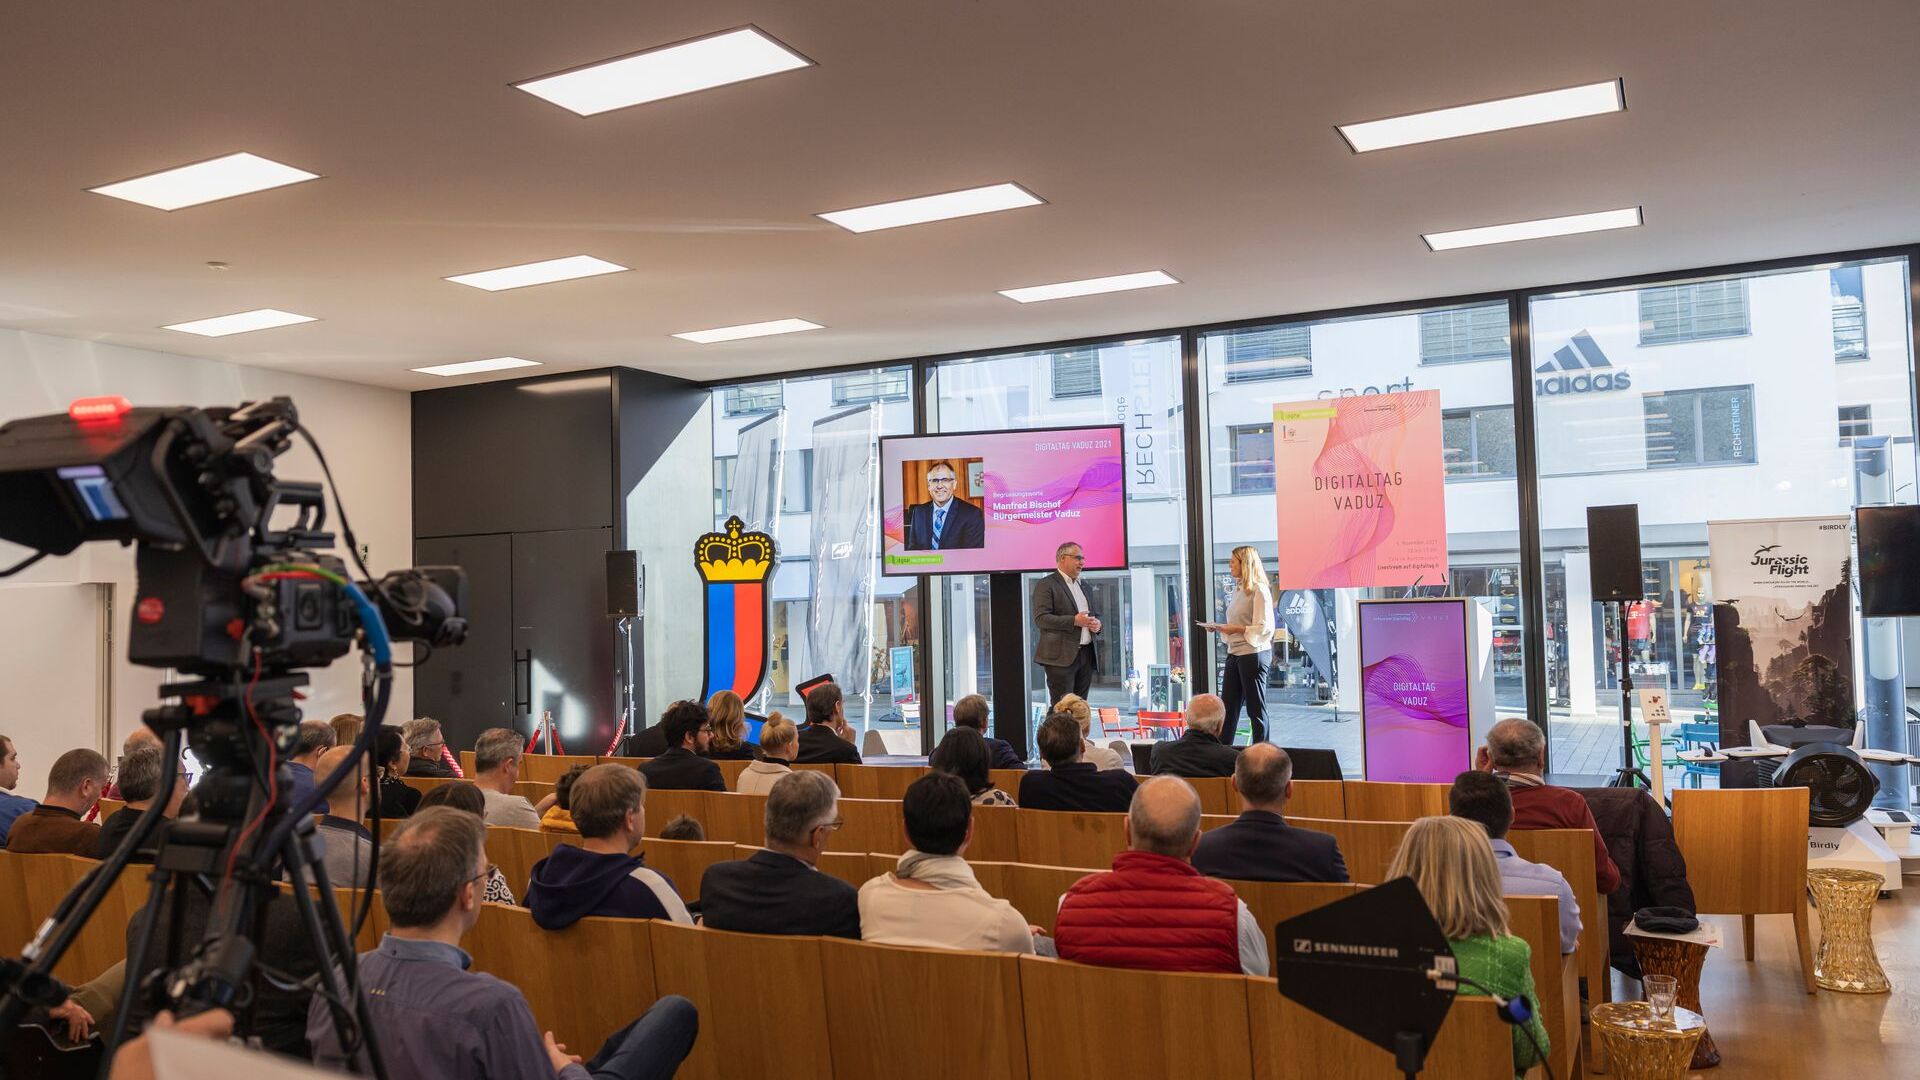 El "Digitaltag Vaduz", acogido por el Kunstmuseum de la capital del Principado de Liechtenstein el sábado 6 de noviembre de 2021, despertó el entusiasmo del público y de los ponentes en analogía con el "Swiss Digital Day" del día 10 siguiente: la intervención de el alcalde de la capital Manfred Bischof